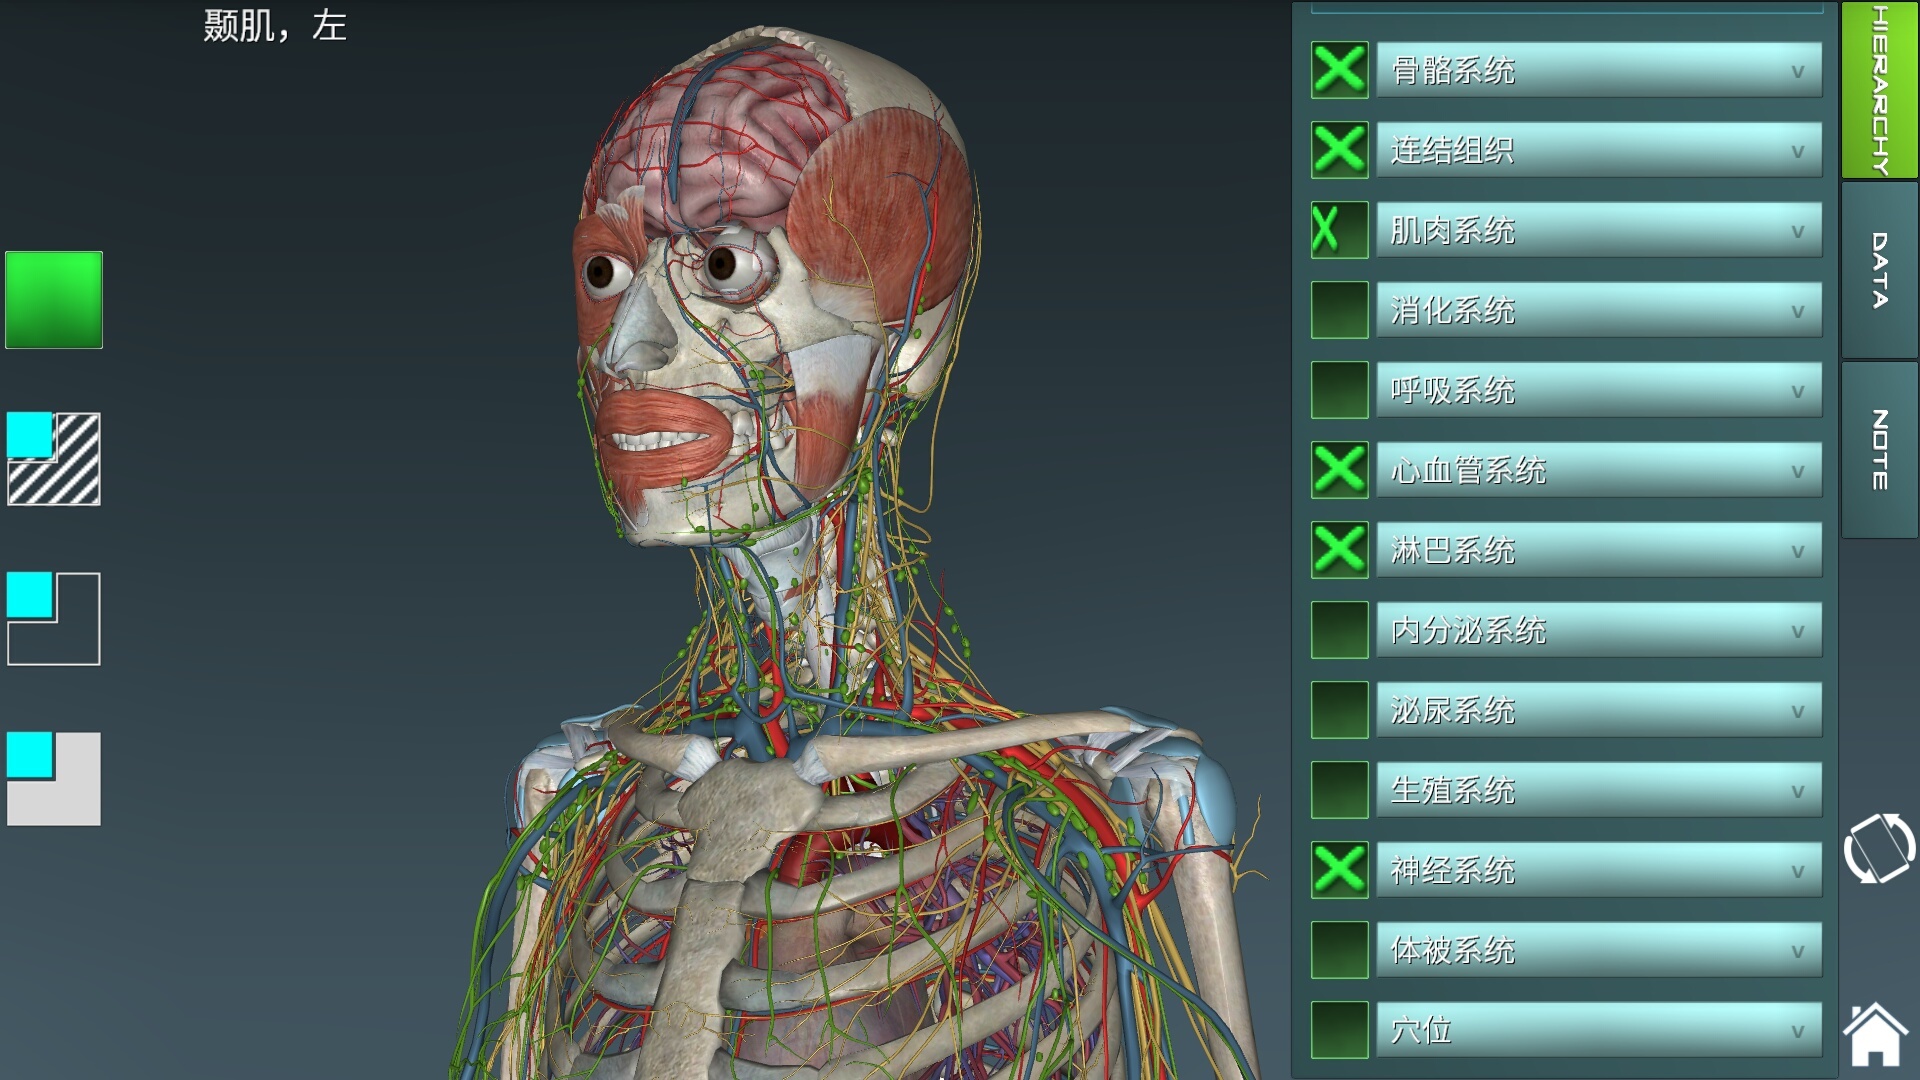 人体正面与背面的躯干骨骼结构-普画网